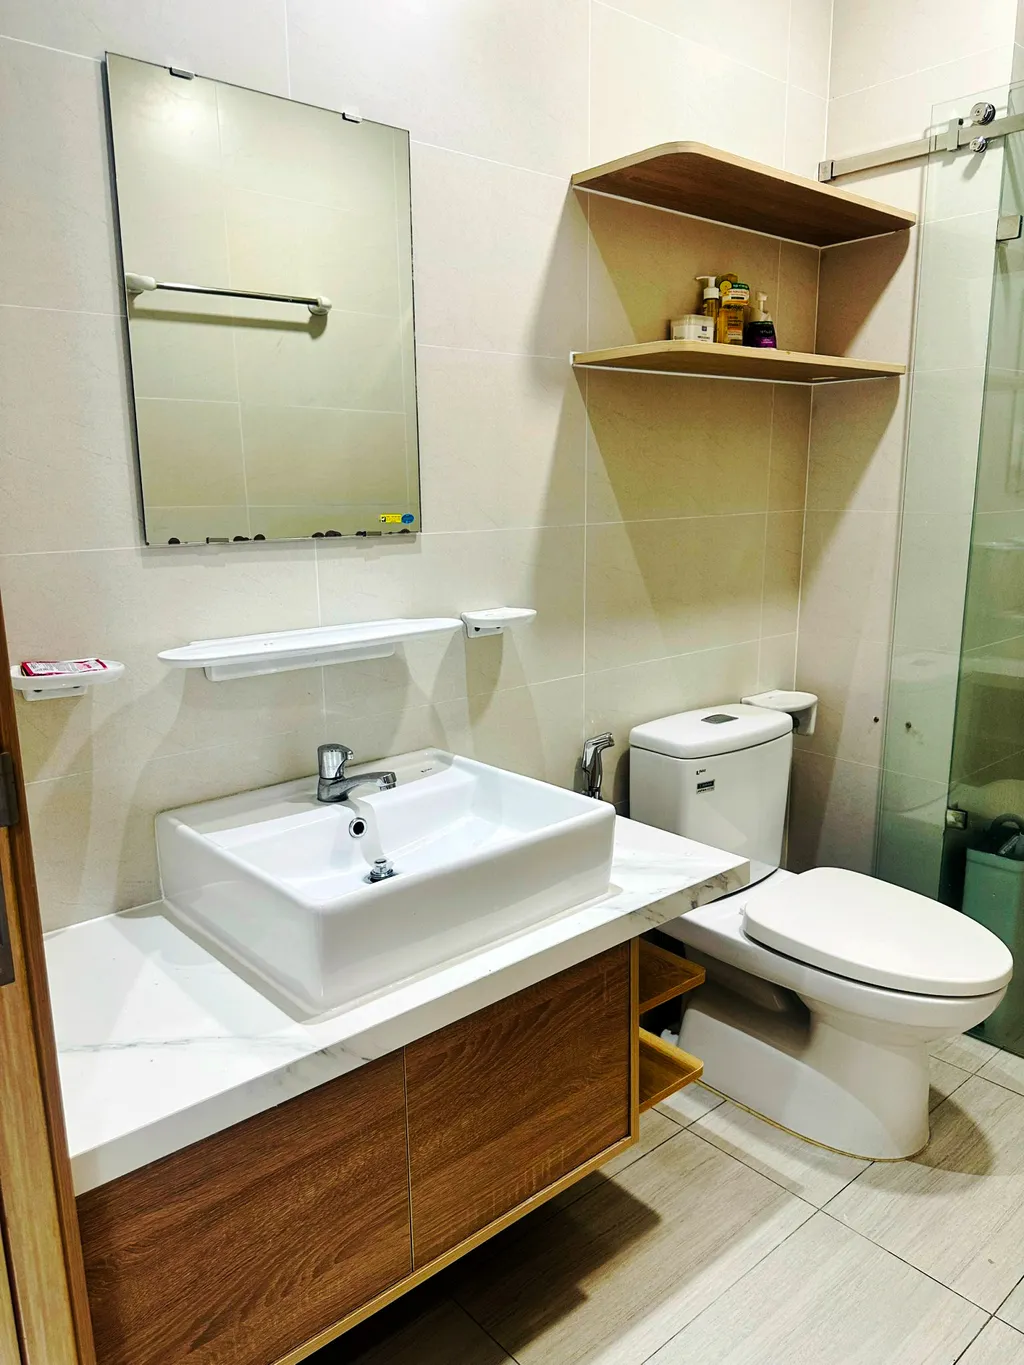 Hoàn thiện nội thất phòng tắm, nhà vệ sinh Căn hộ Thảo Điền Quận 2 mang phong cách Japandi